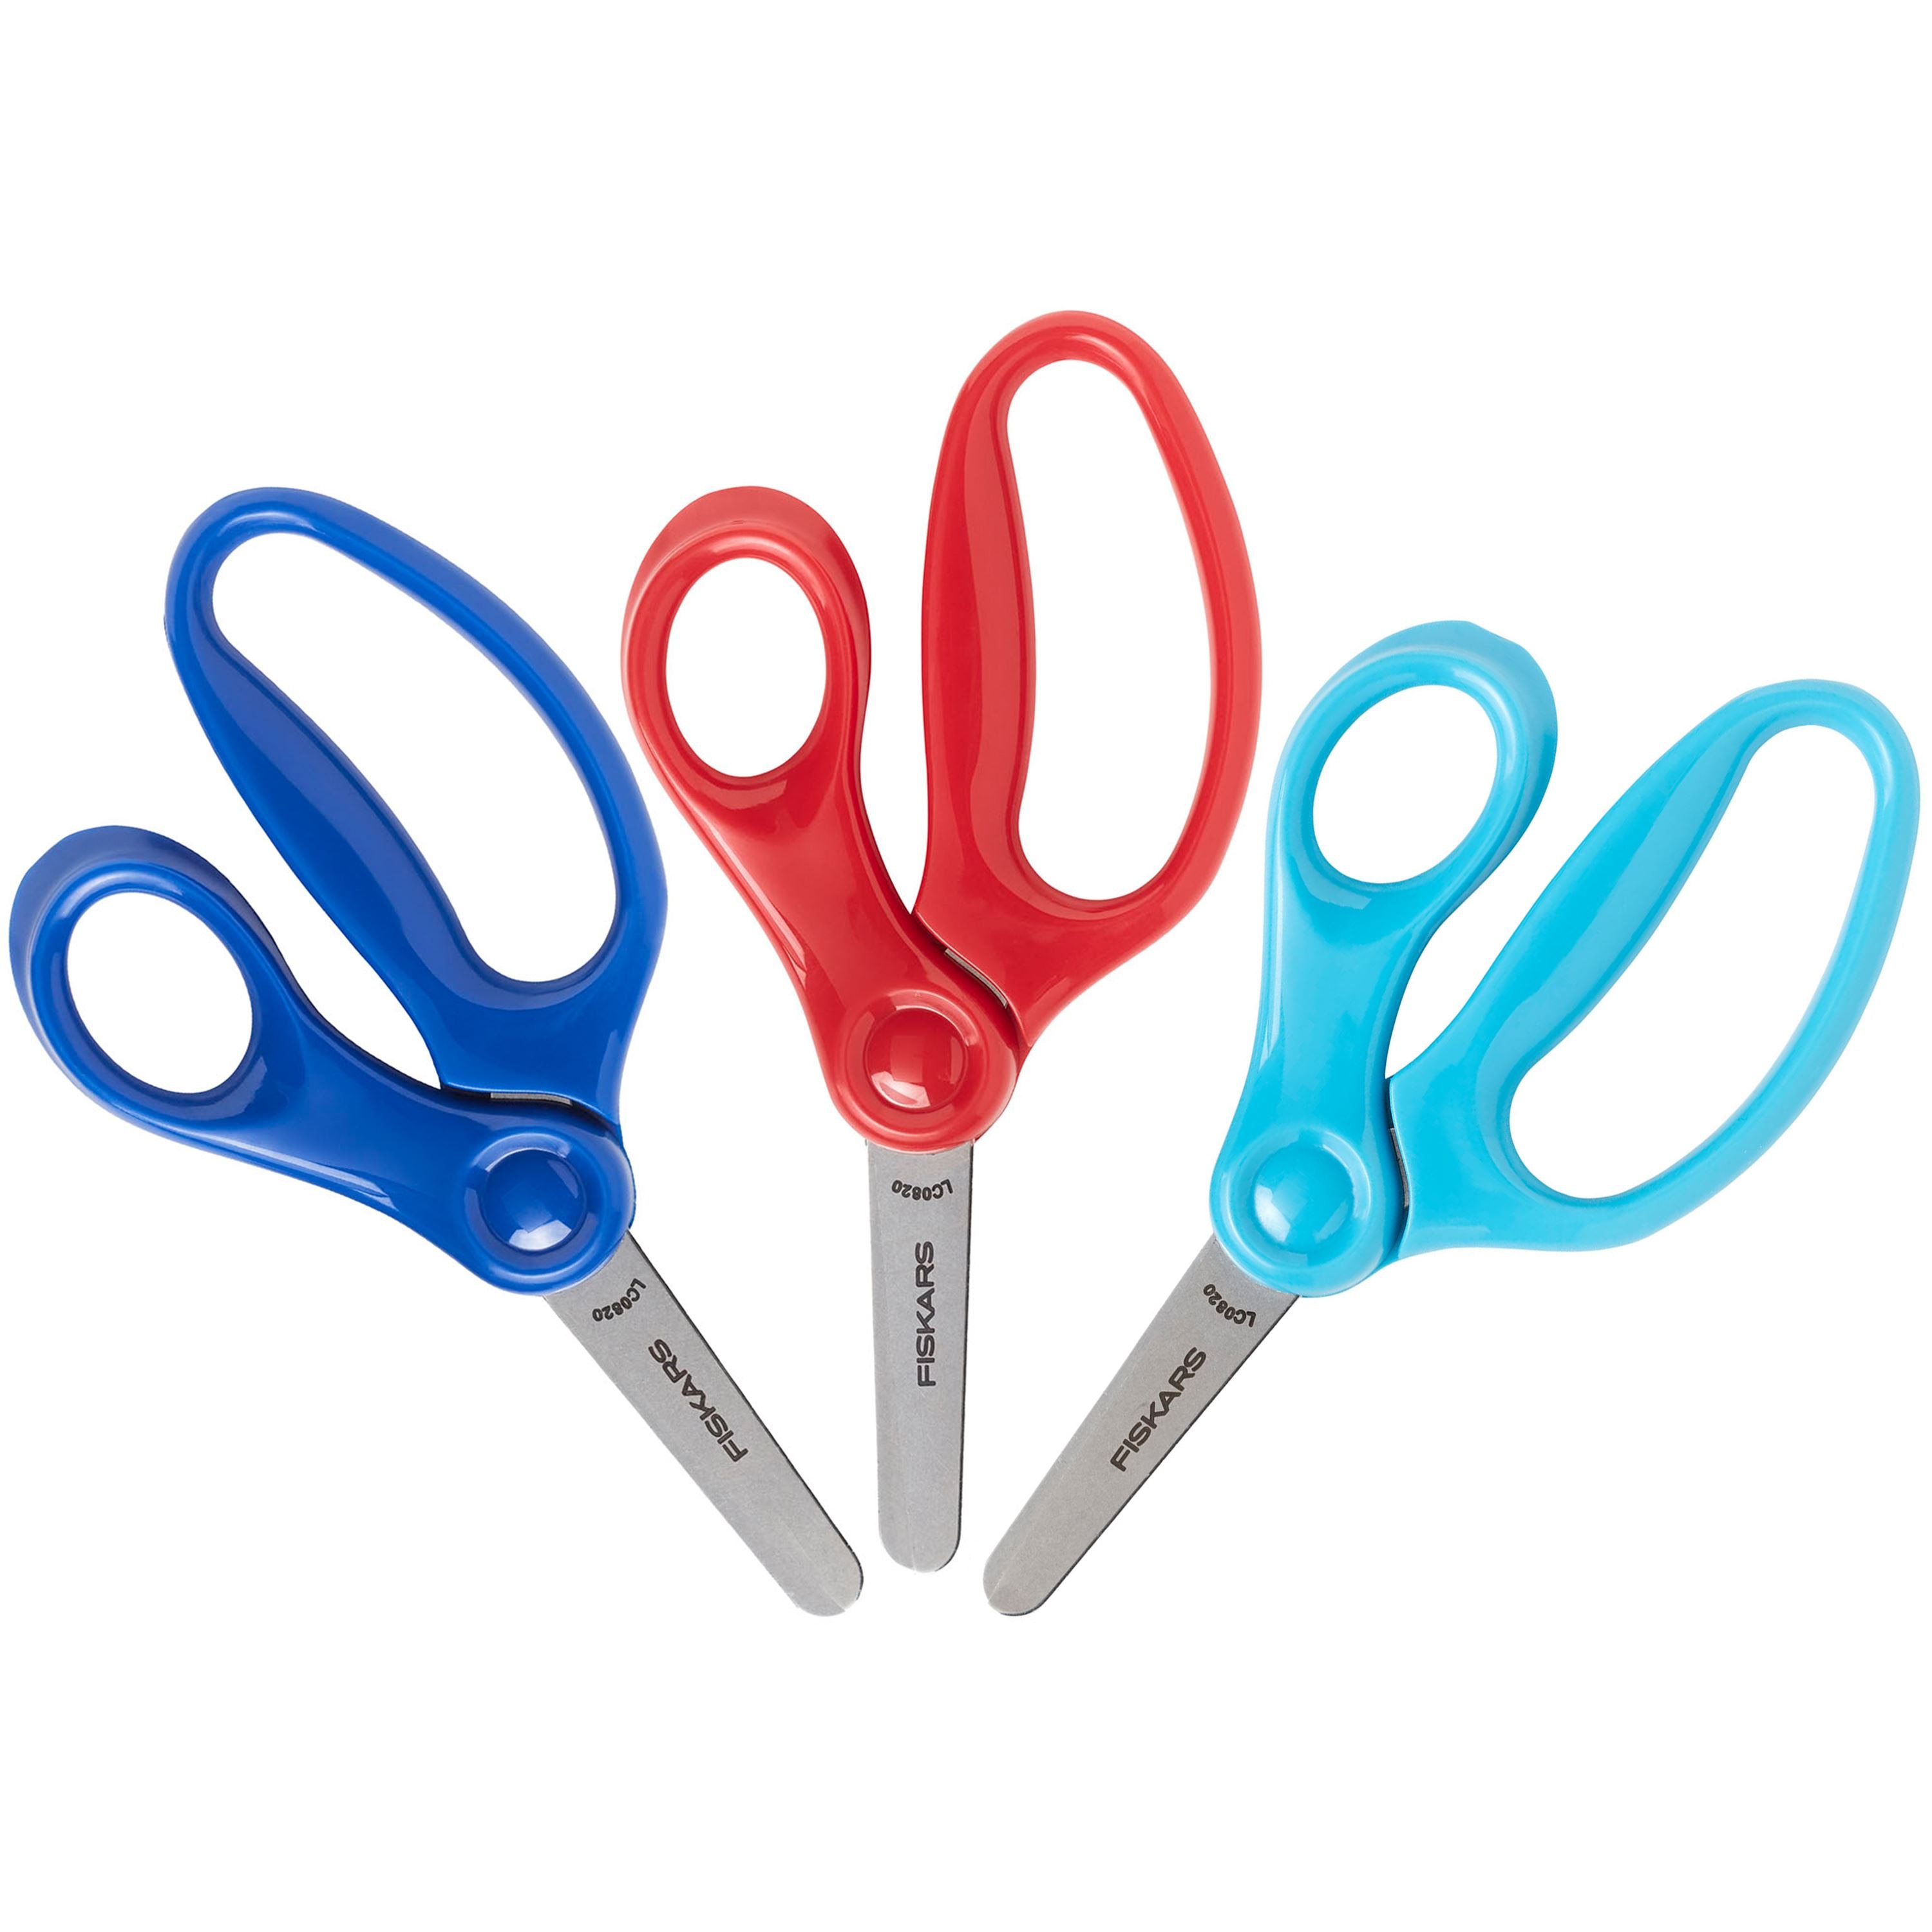 Children's Blunt Scissors, Red, 5, 1 Scissors - CK-9612